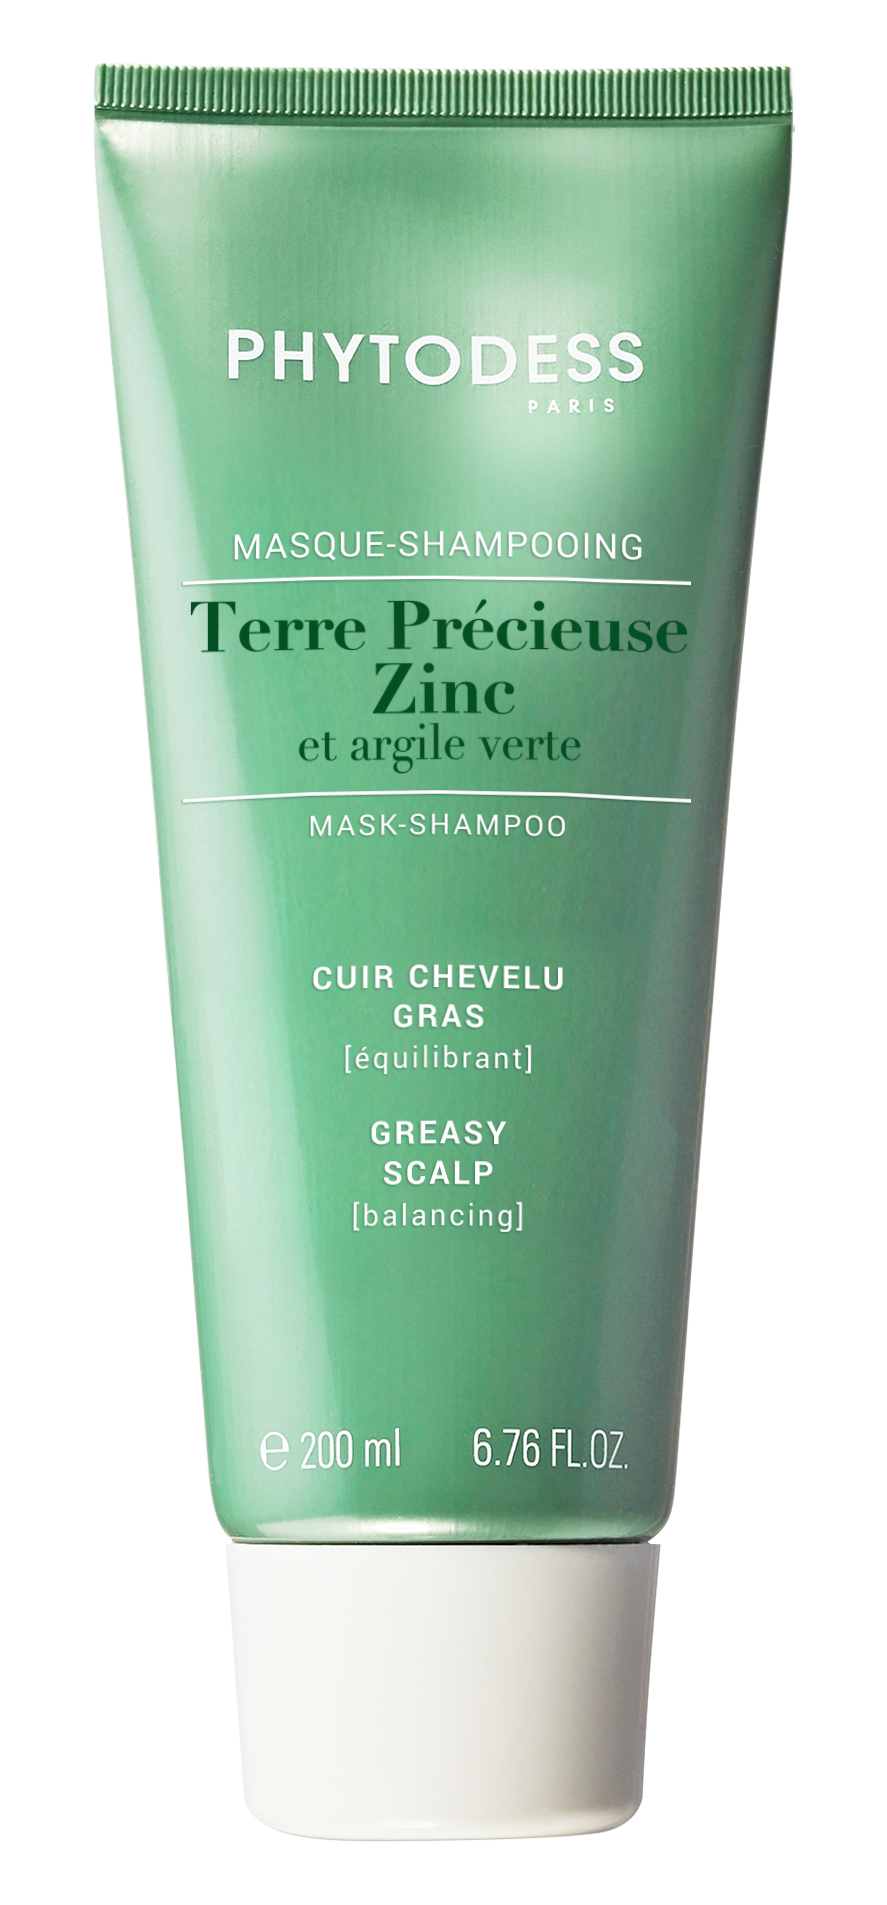 Zinc et argile verte - Masque-shampooing équilibrant Cuir chevelu gras